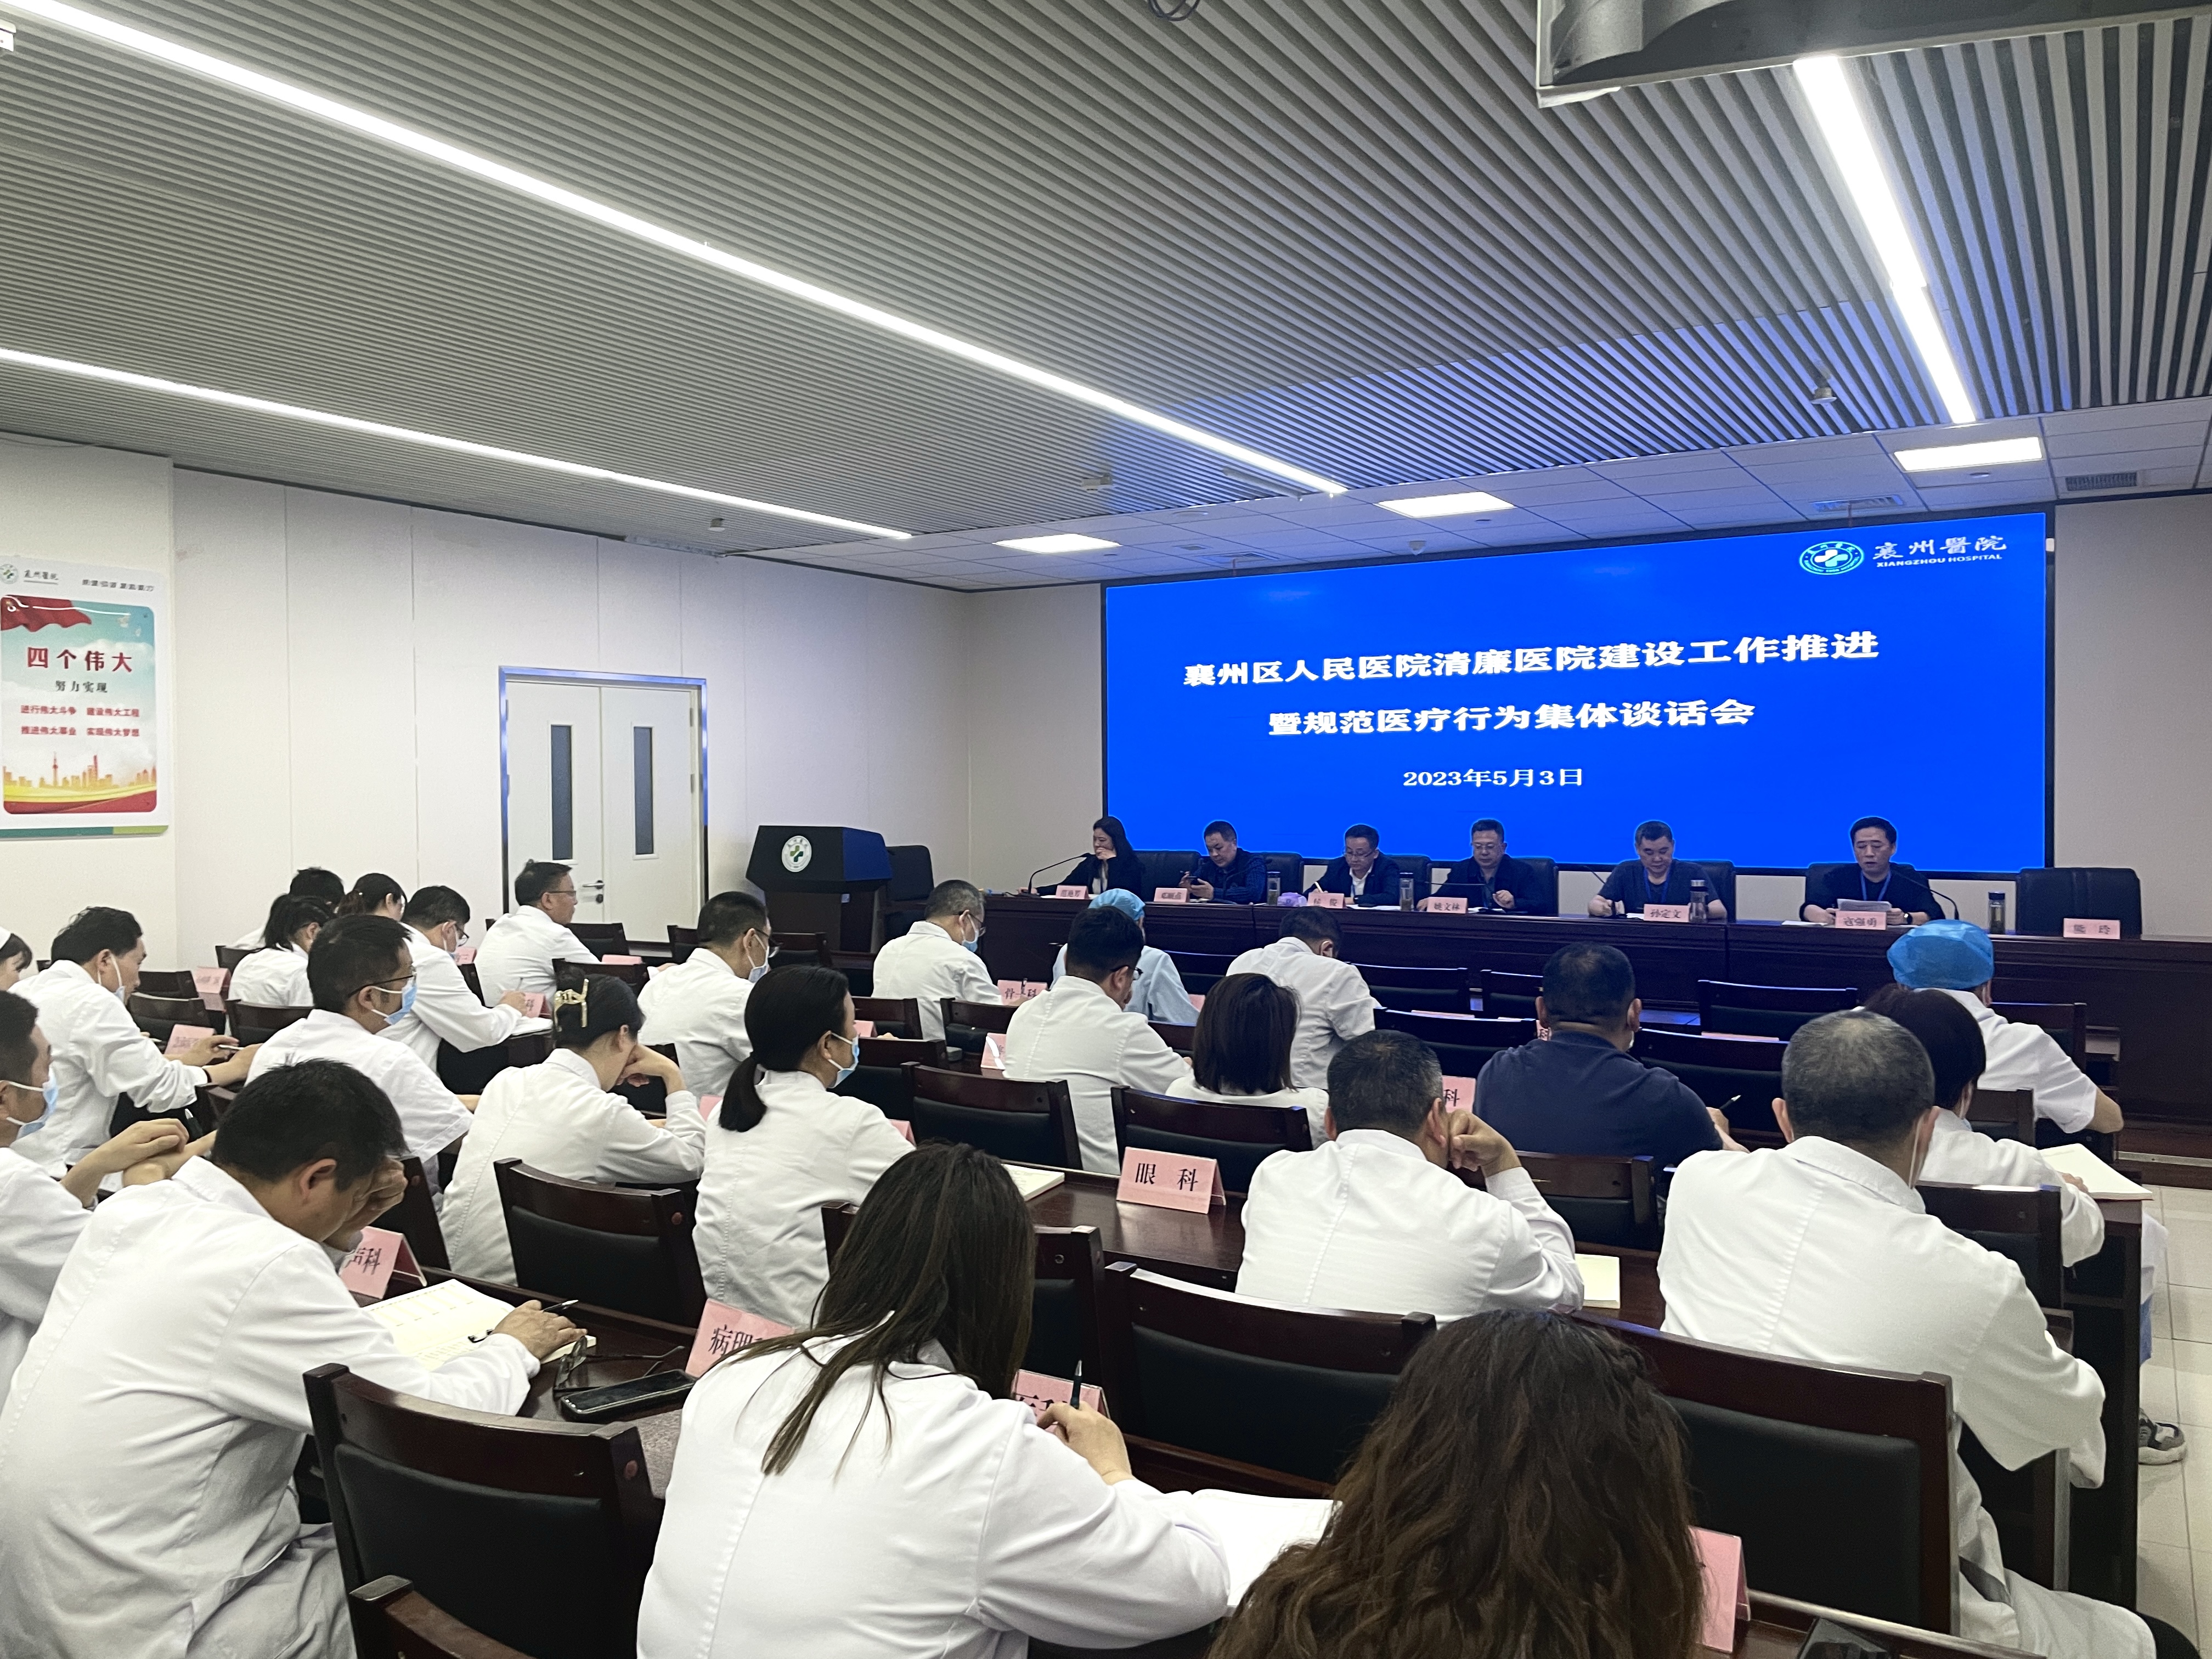 襄州區人民醫院召開清廉醫院建設工作推進暨規范醫療行為集體談話大會